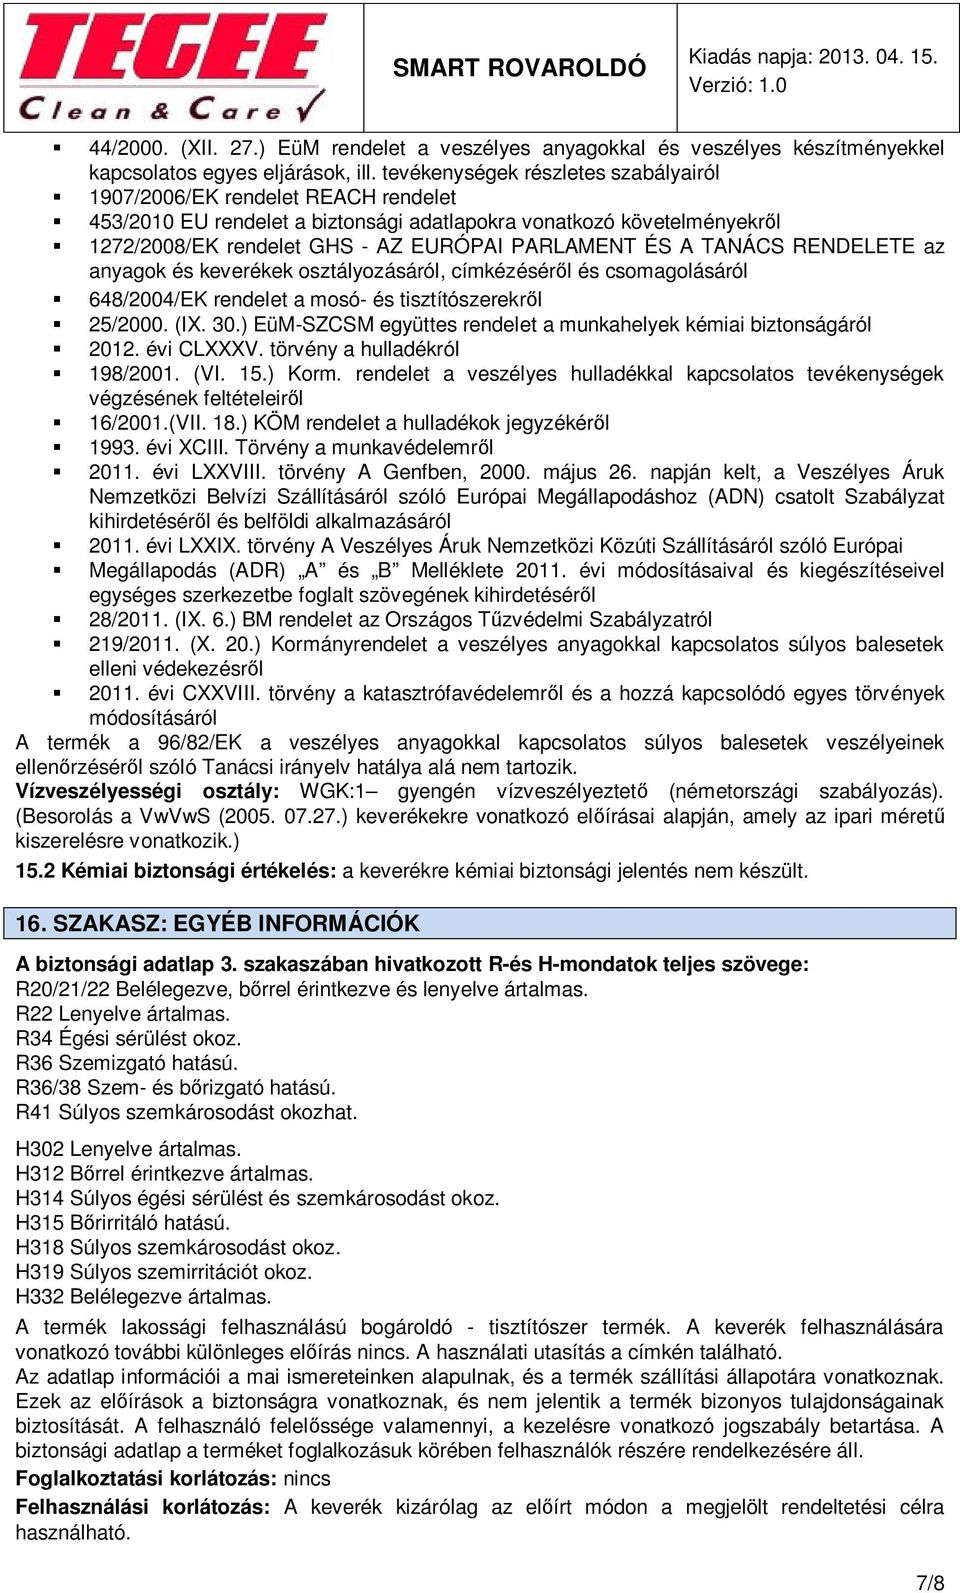 BIZTONSÁGI ADATLAP 1907/2006/EK rendelet alapján - PDF Ingyenes letöltés